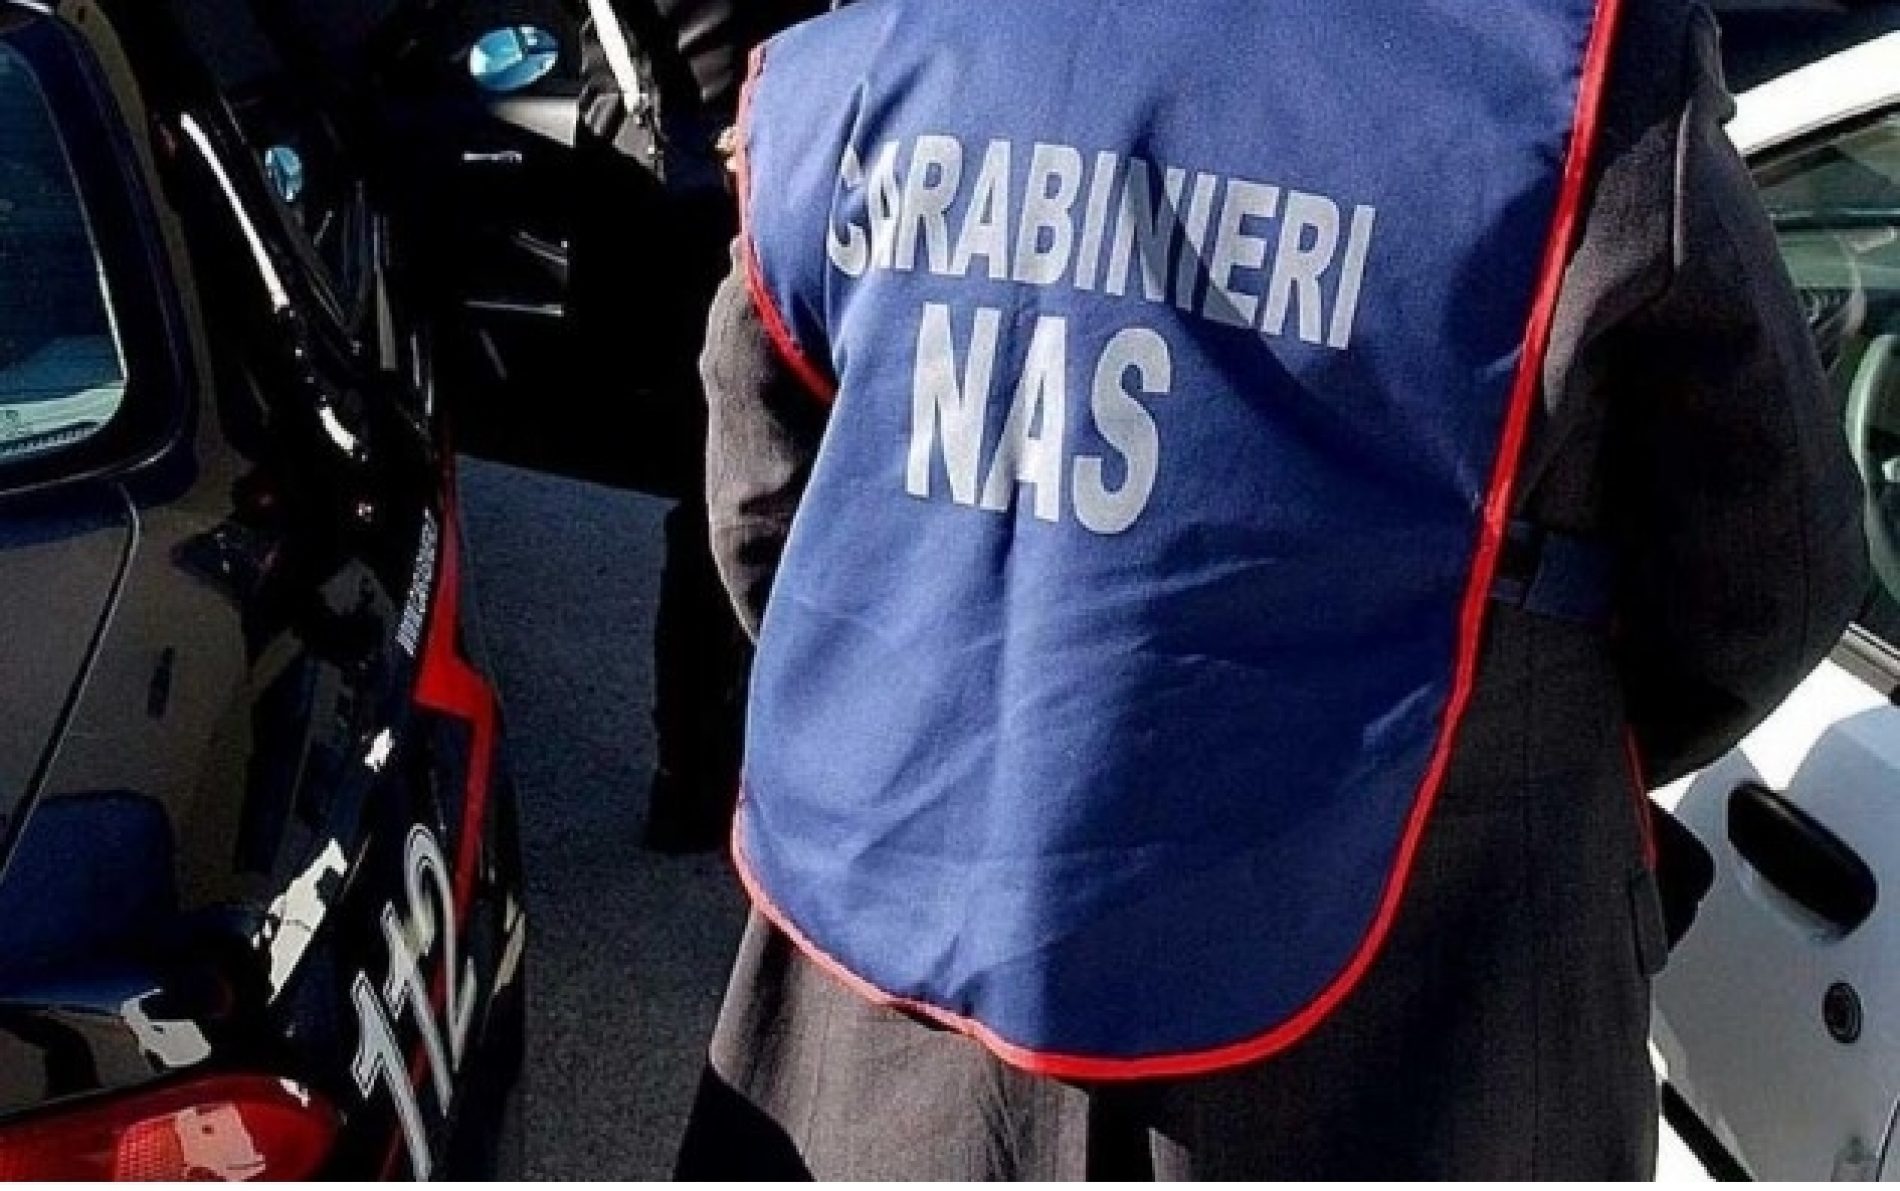 Comando carabinieri per la tutela della Salute. Crioterapie abusive: i carabinieri dei Nas controllano 488 strutture e Sequestrano 13 apparecchiature.